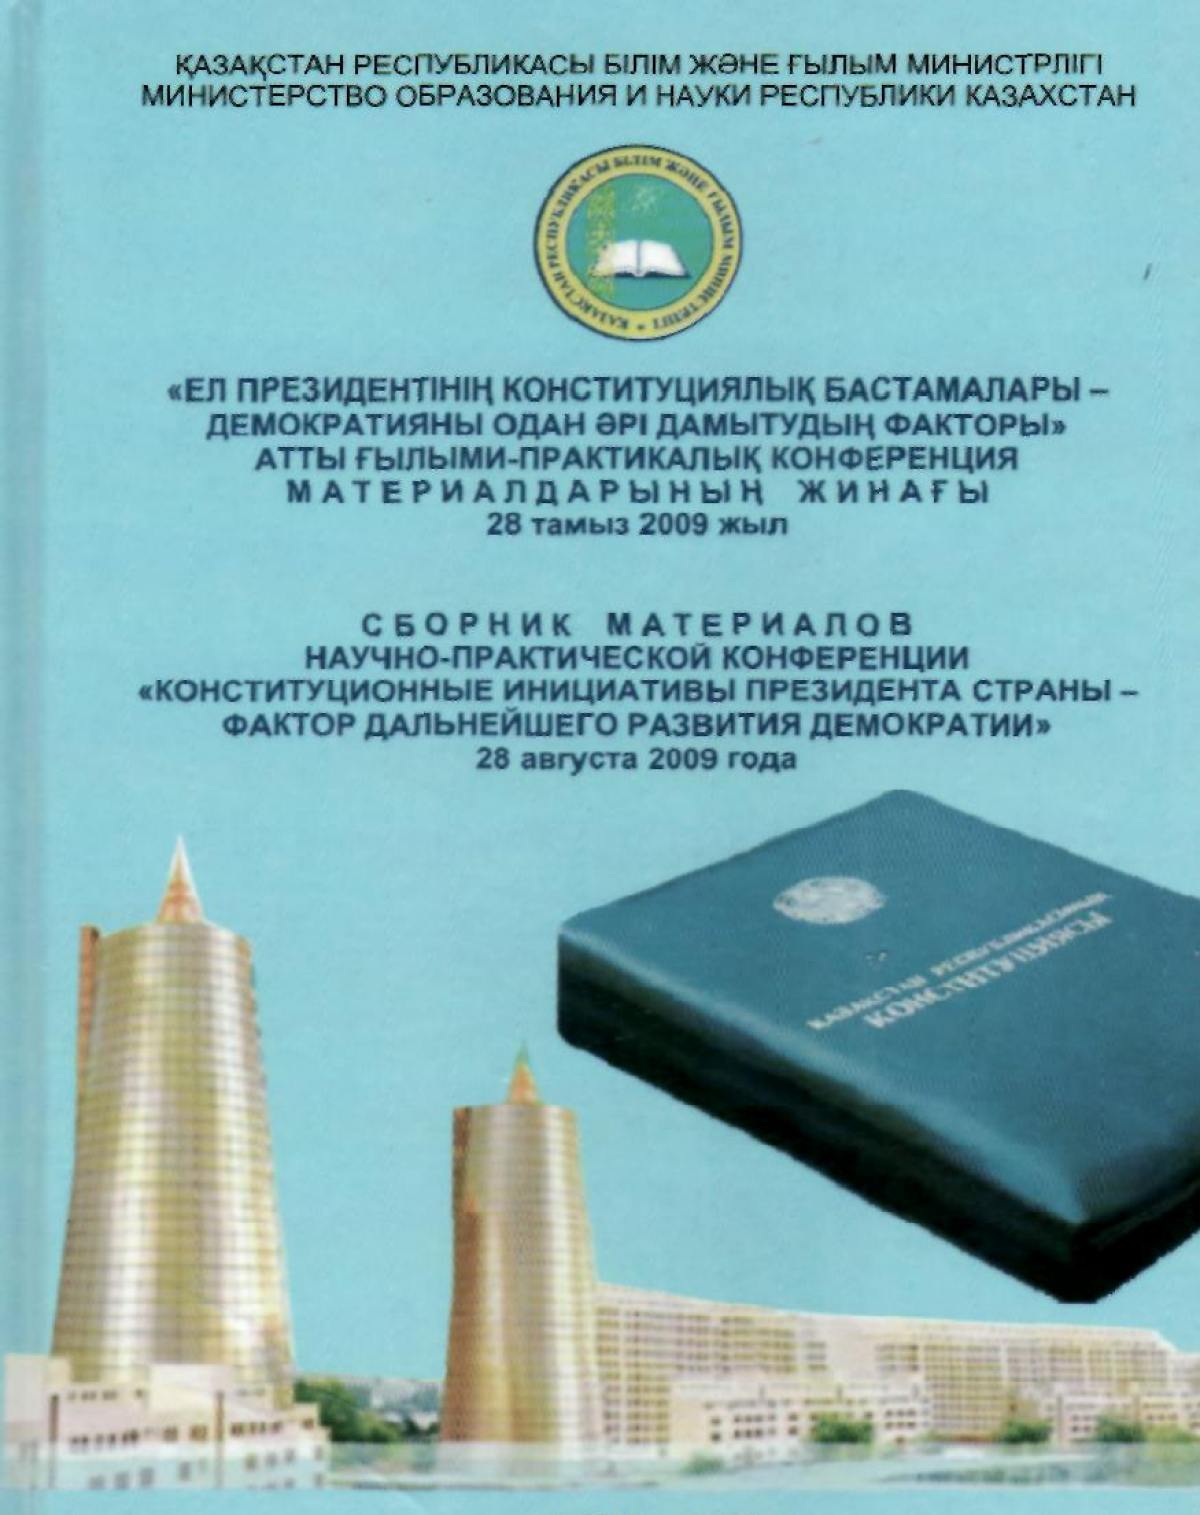 О некоторых проблемах в изучении истории Независимого Казахстана - e-history.kz